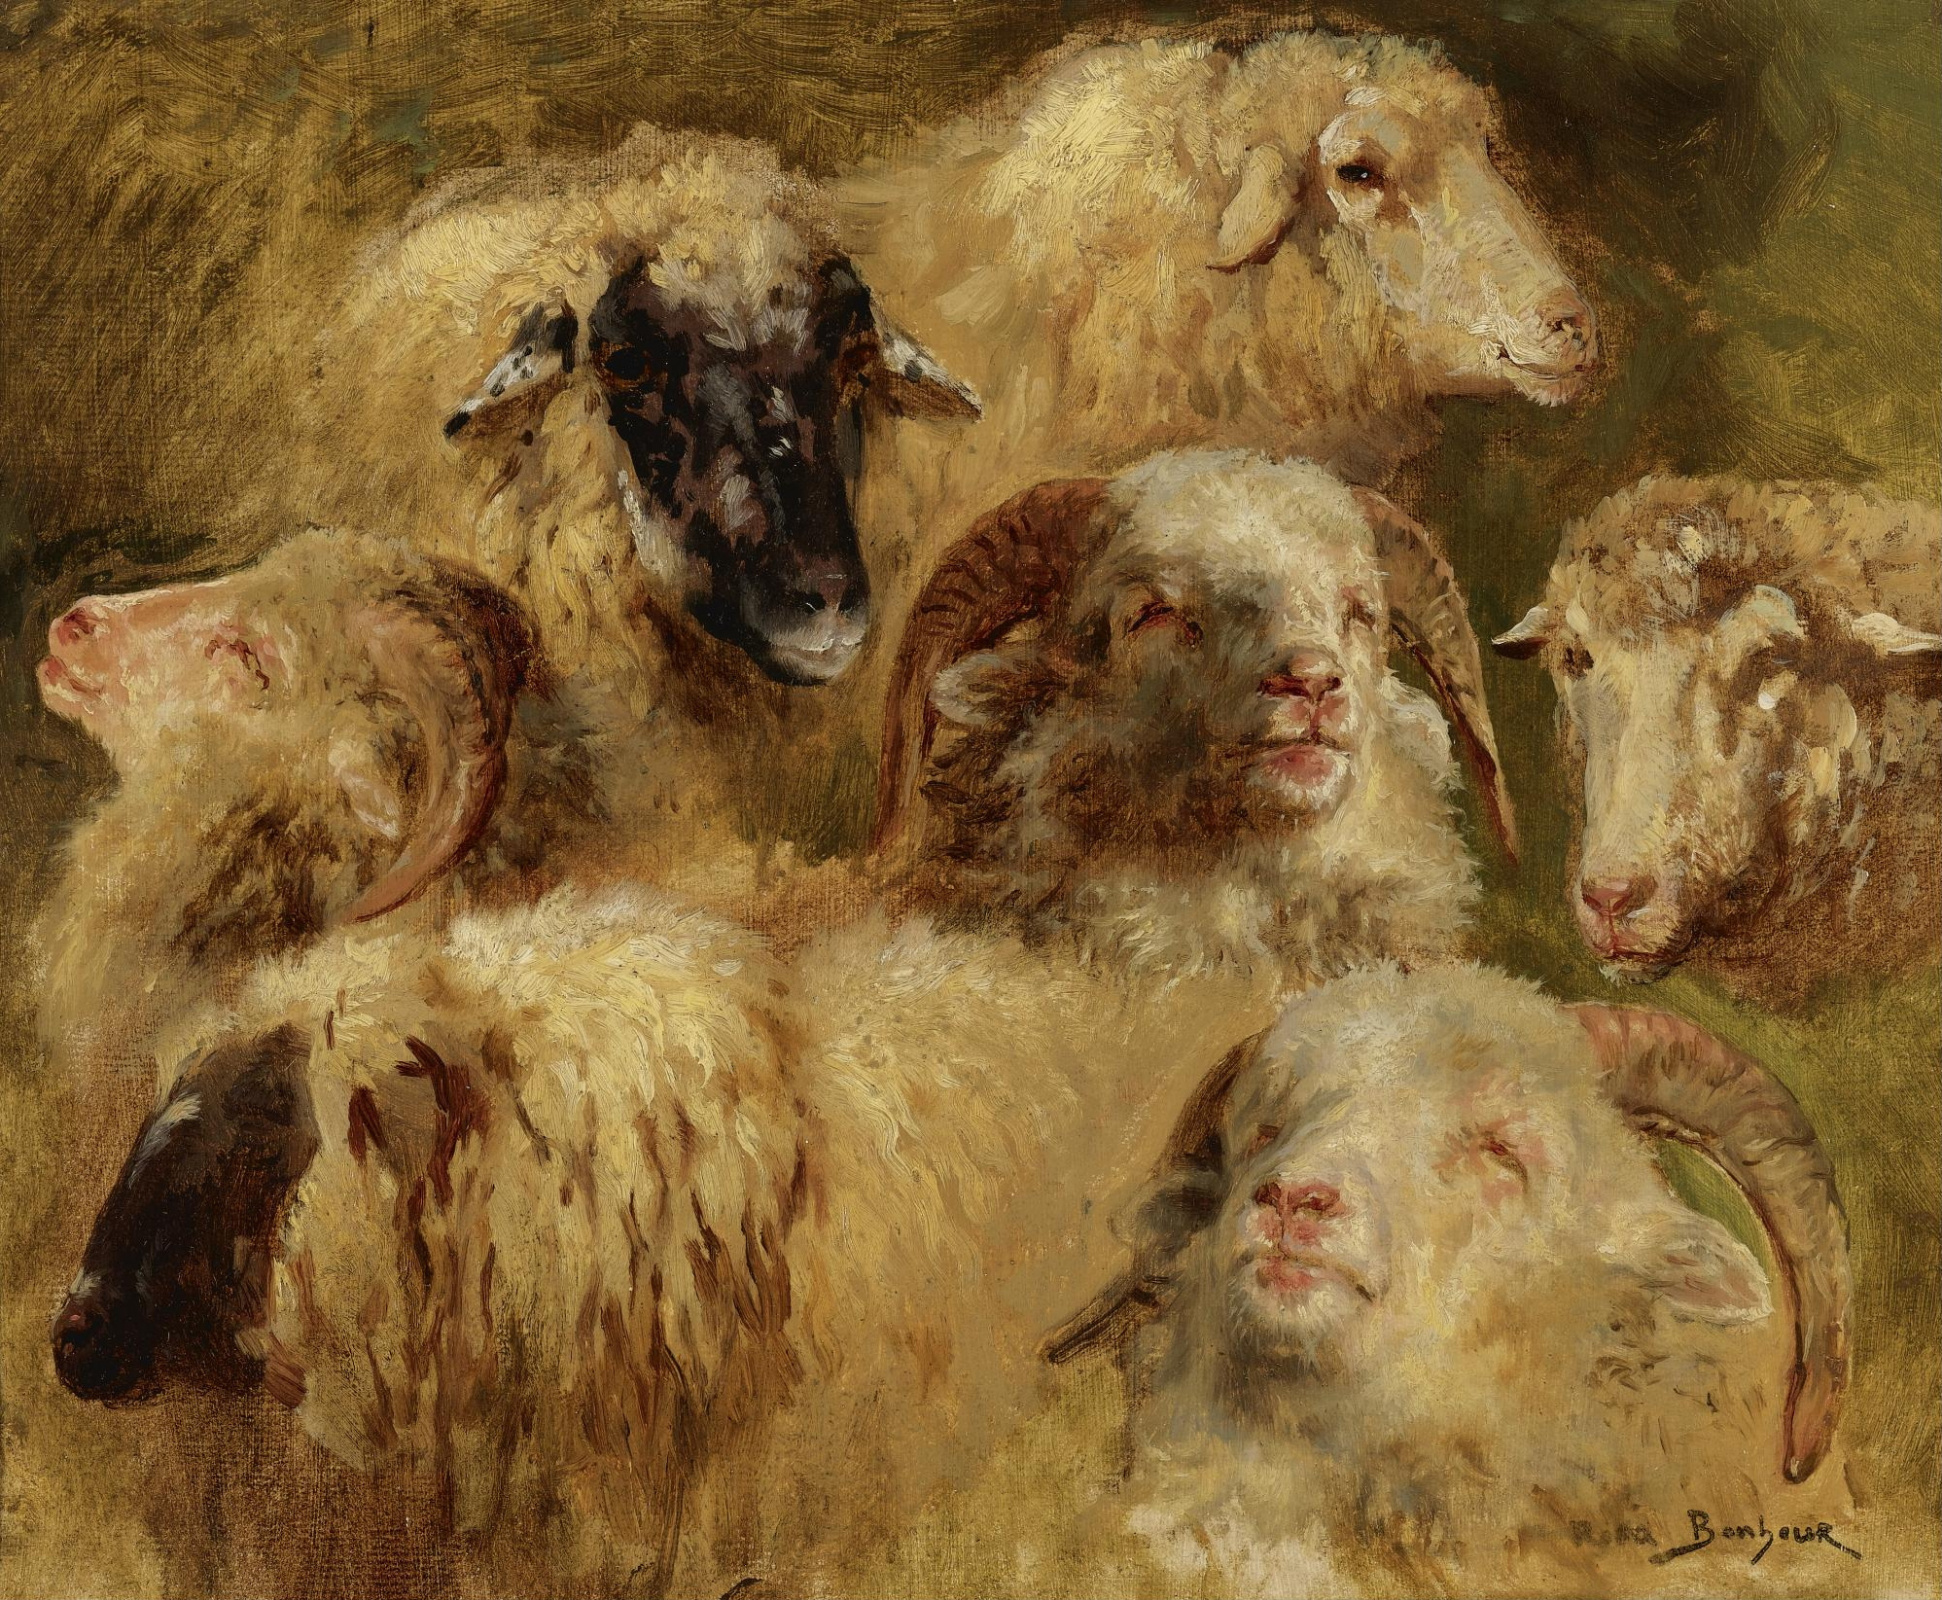 Купить цифровую версию картины: Роза Бонёр - Головы овец и баранов | Артхив